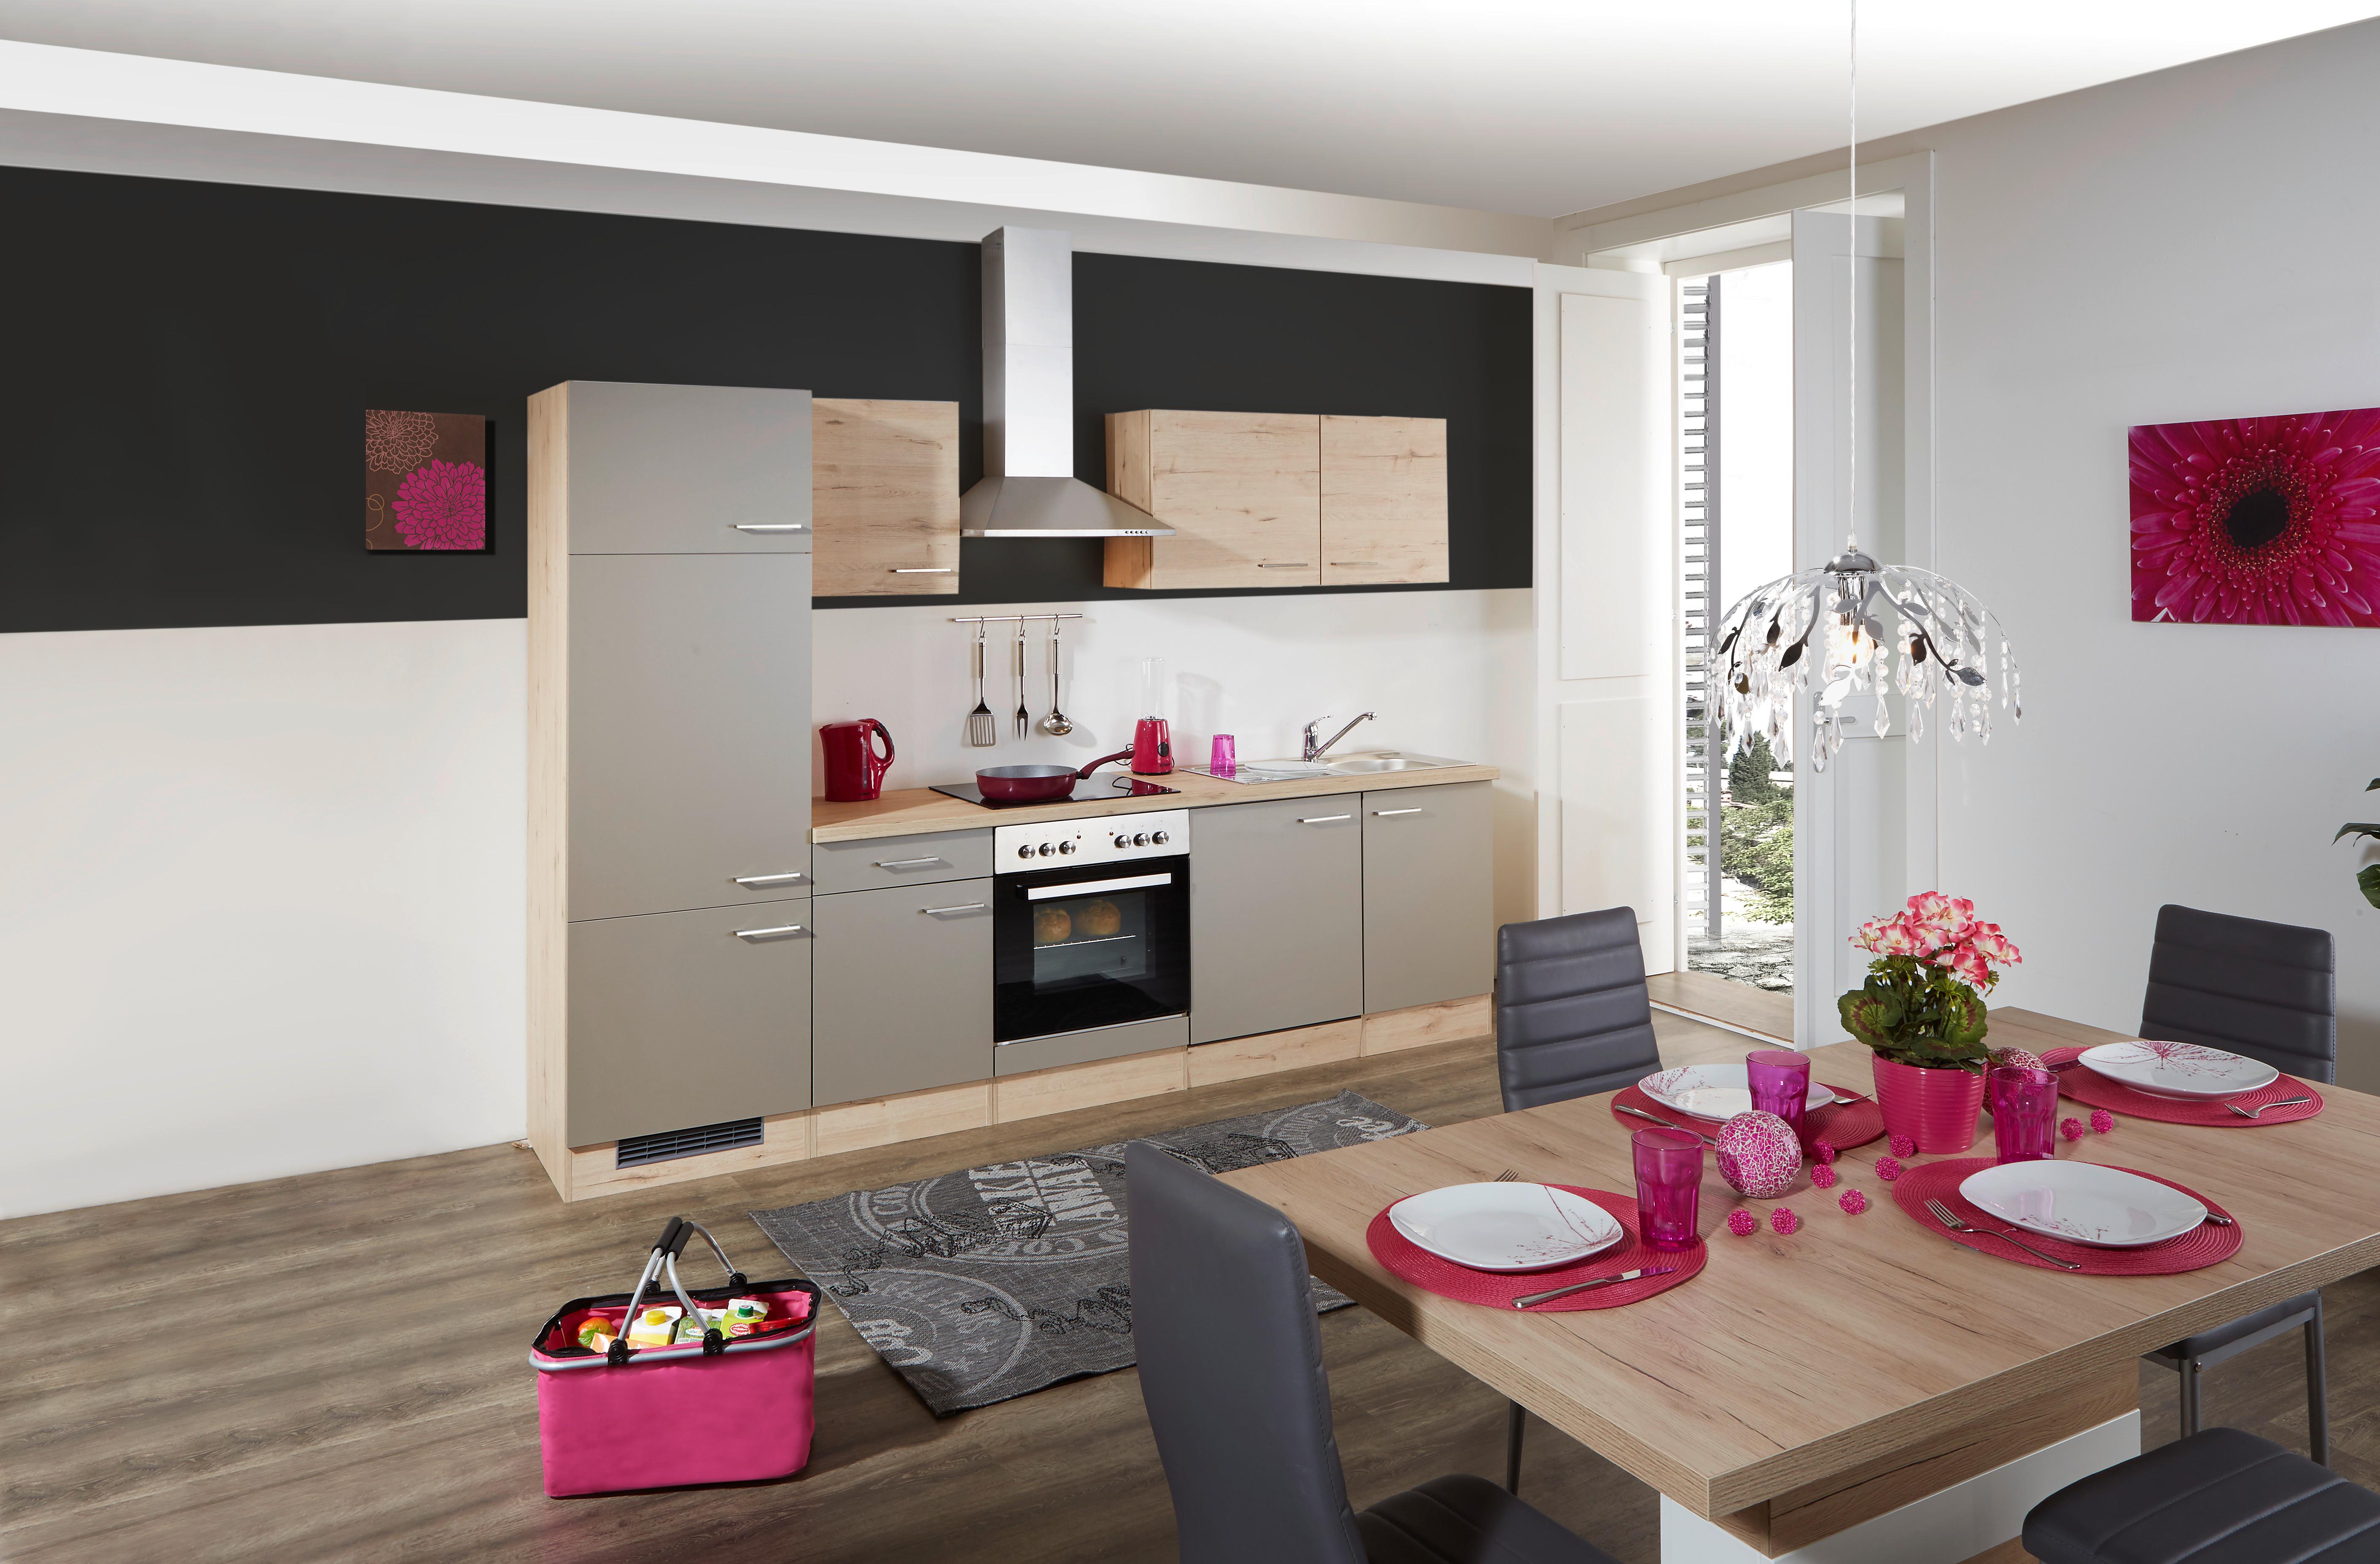 Kuhinjski Blok Bez Uređaja Riva - šampanjac/boje hrasta, Modern, drvni materijal (270cm) - MID.YOU